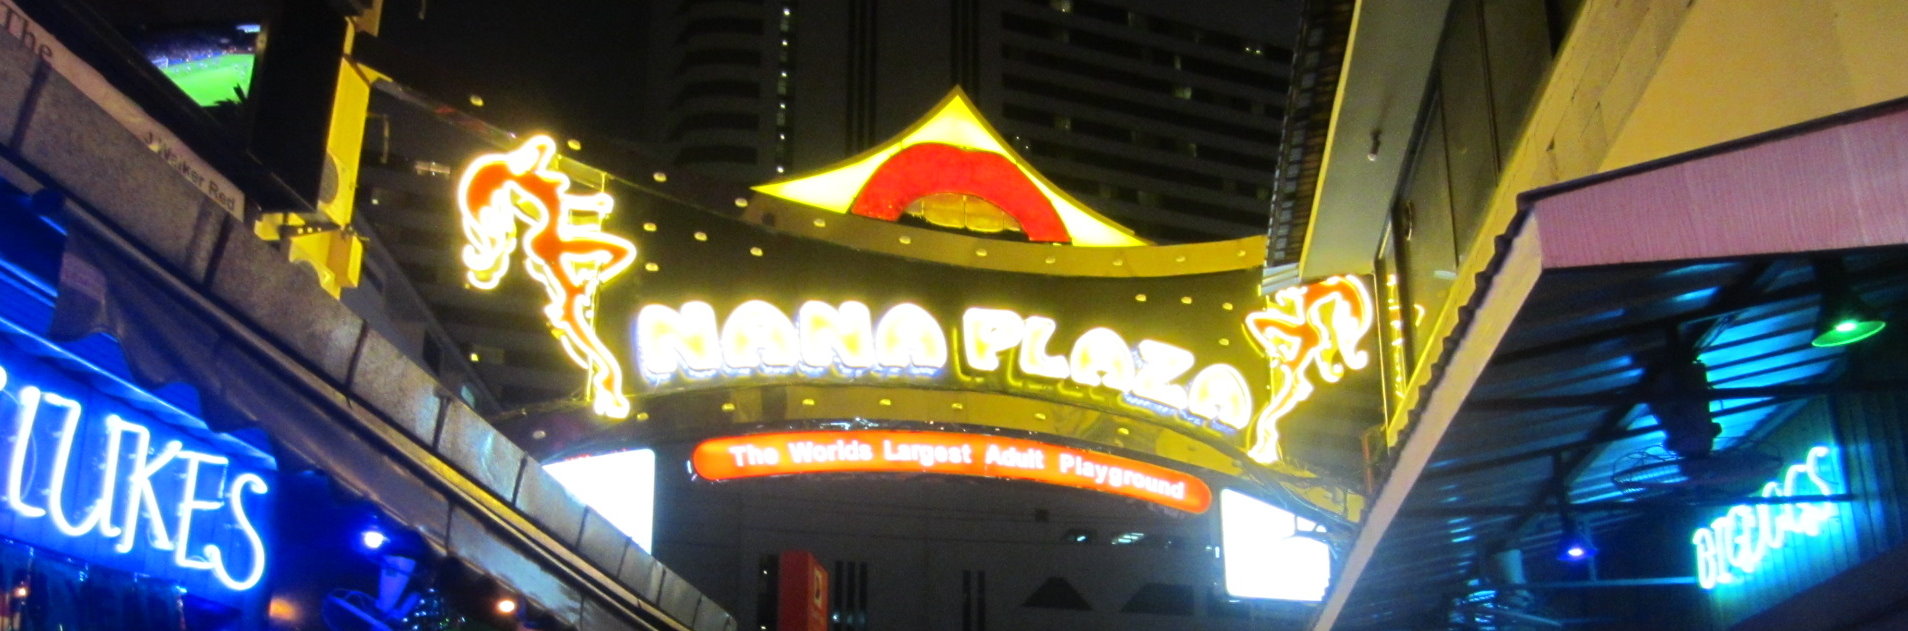 Nana Plaza Hello From The Five Star Vagabond